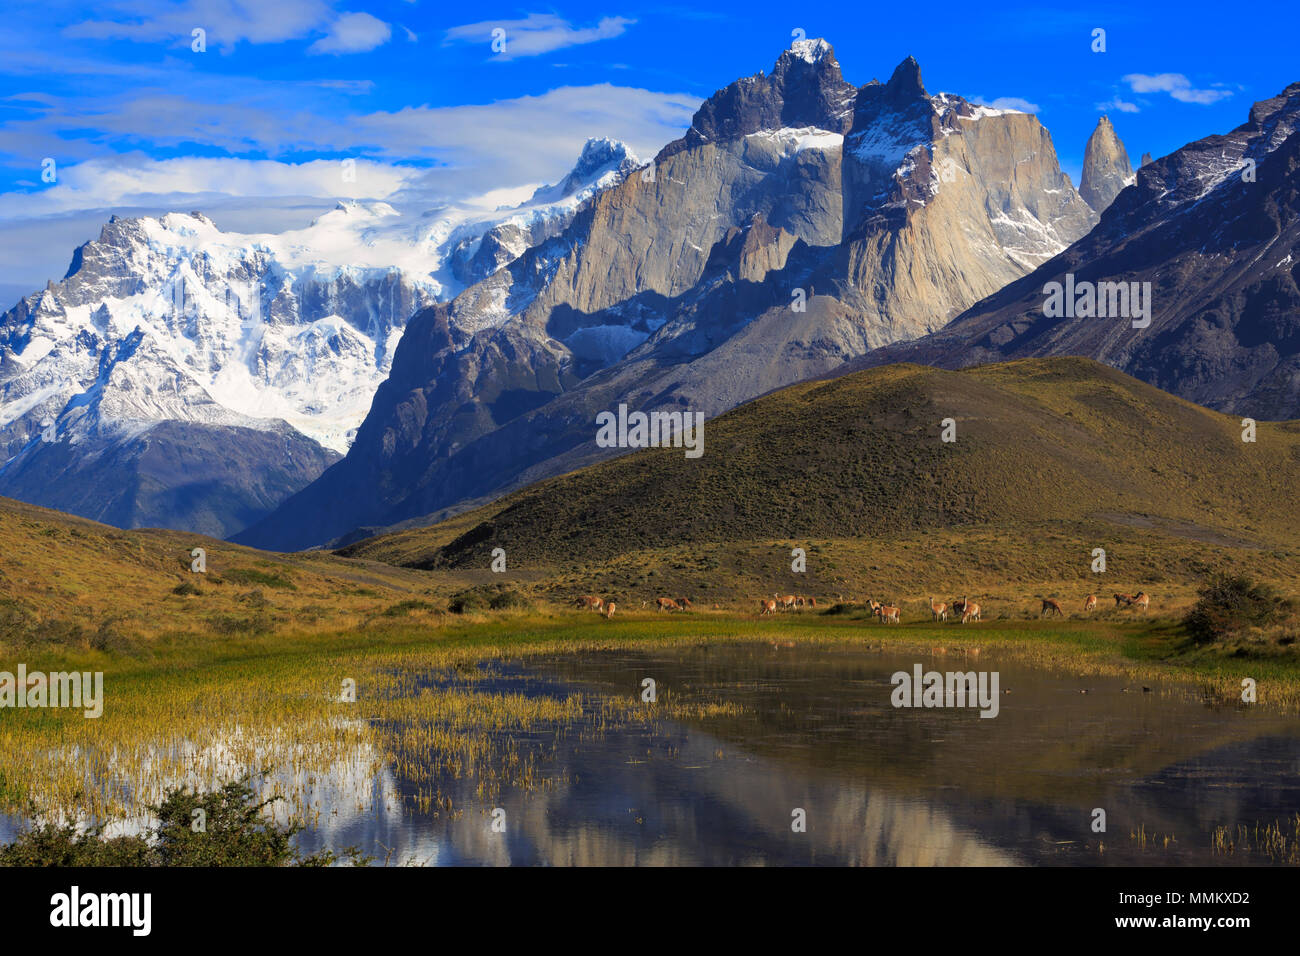 Parc National Torres del Paine, en Patagonie, au Chili. Guanacos paissent au bord d'un lagon. Banque D'Images